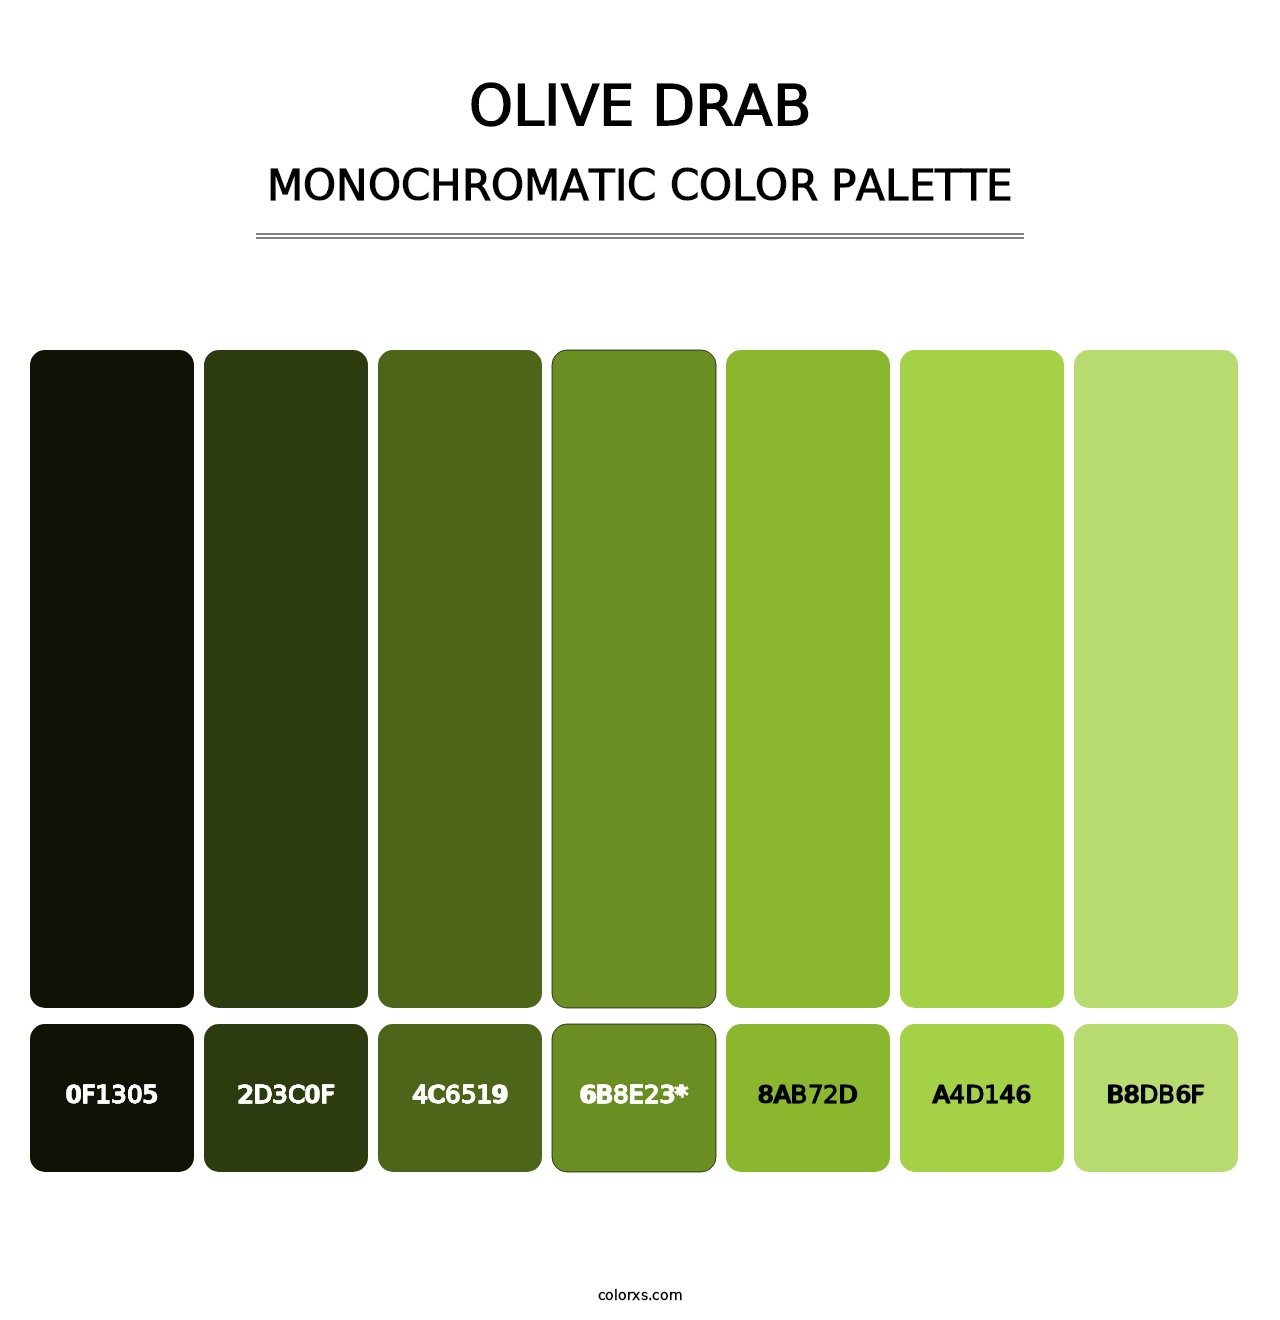 Olive Drab - Monochromatic Color Palette